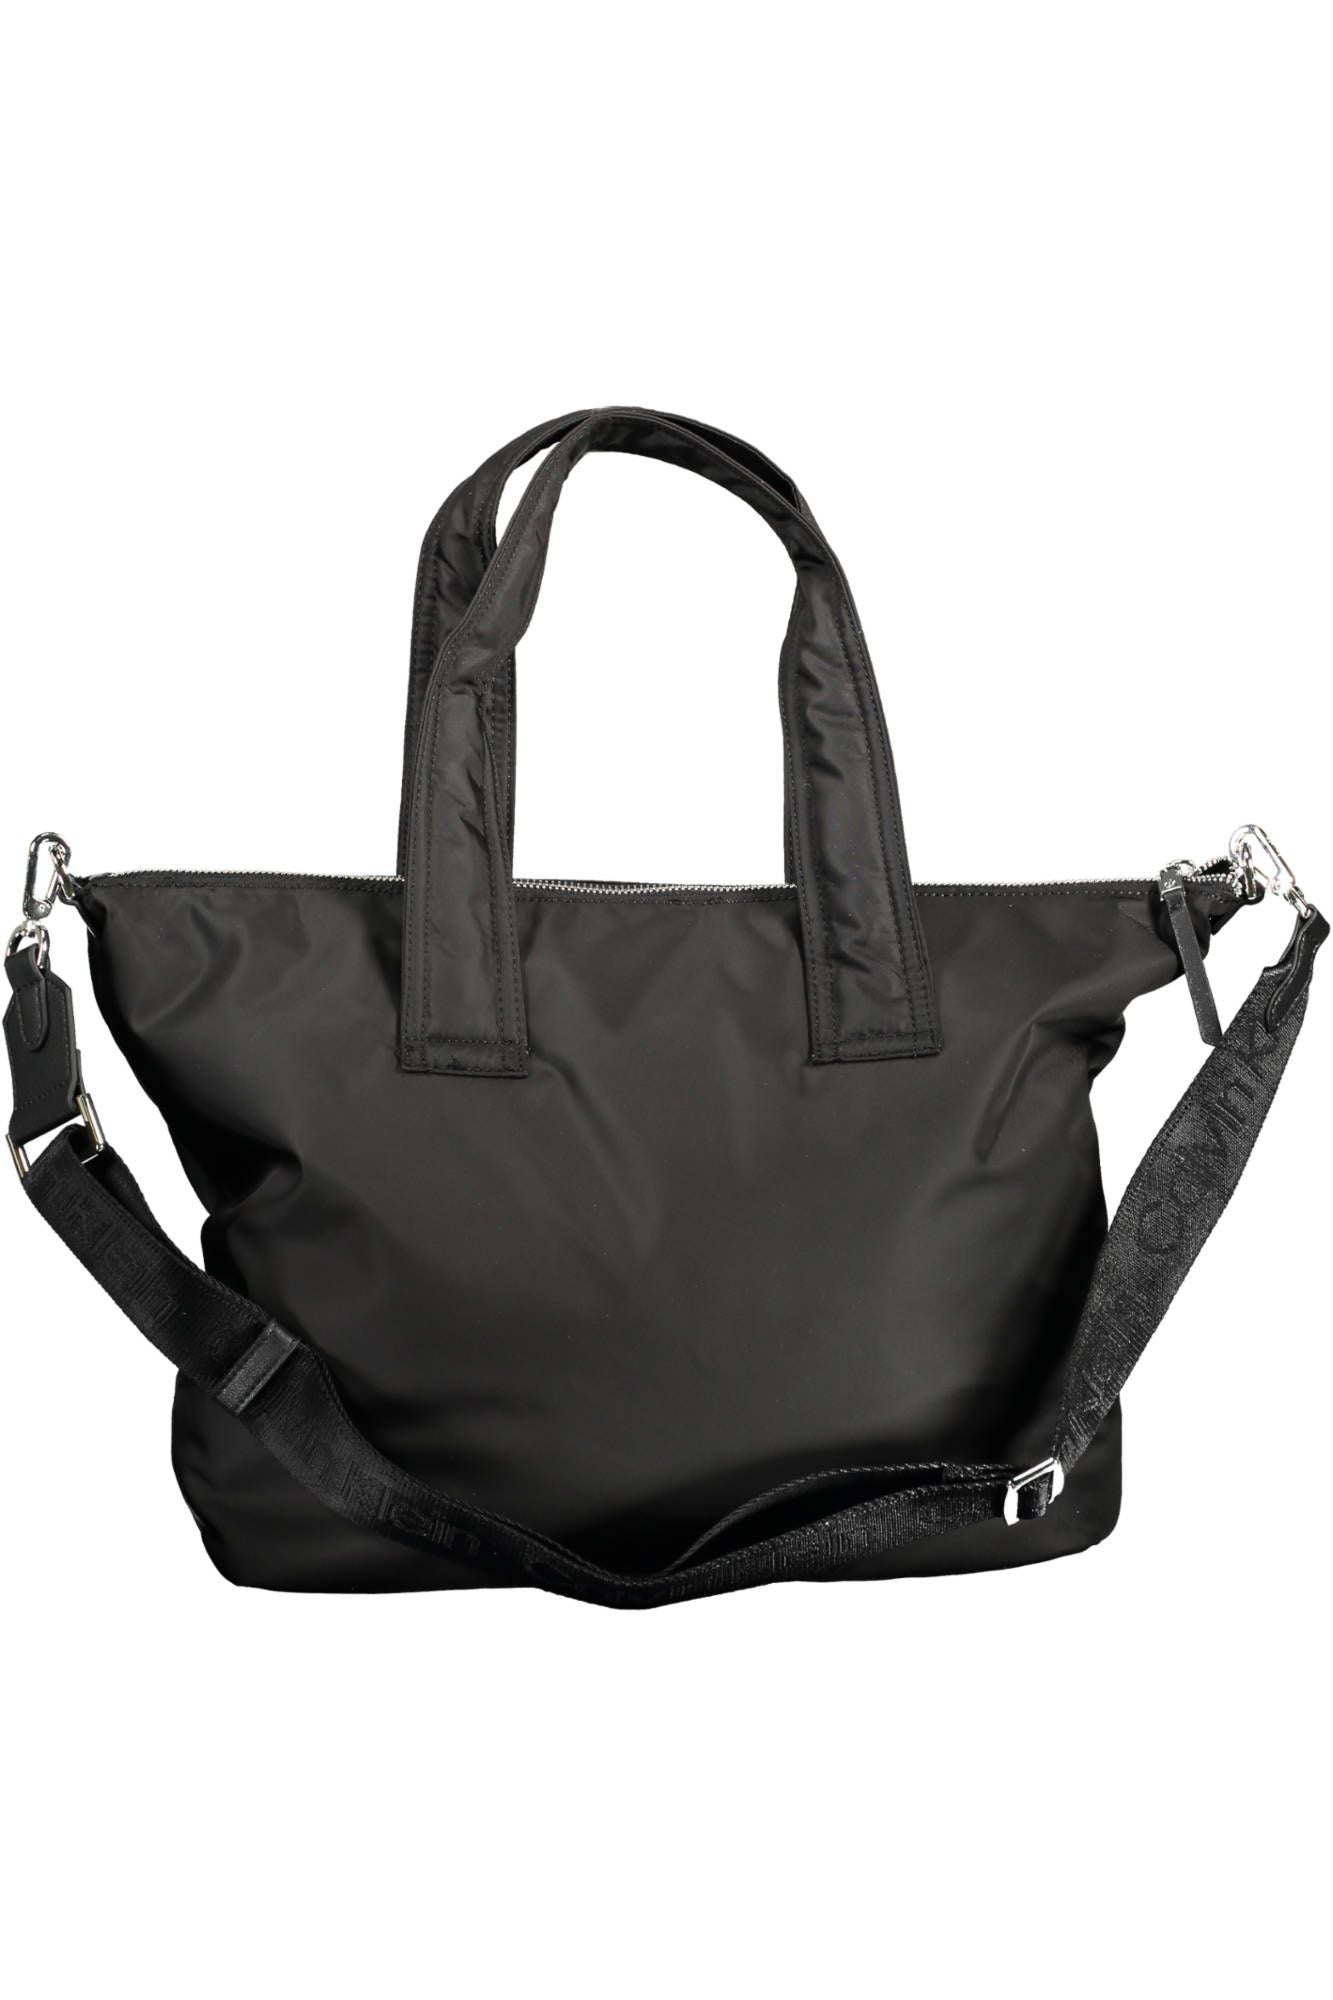 Elegant Black Shoulder Bag with Contrasting Details